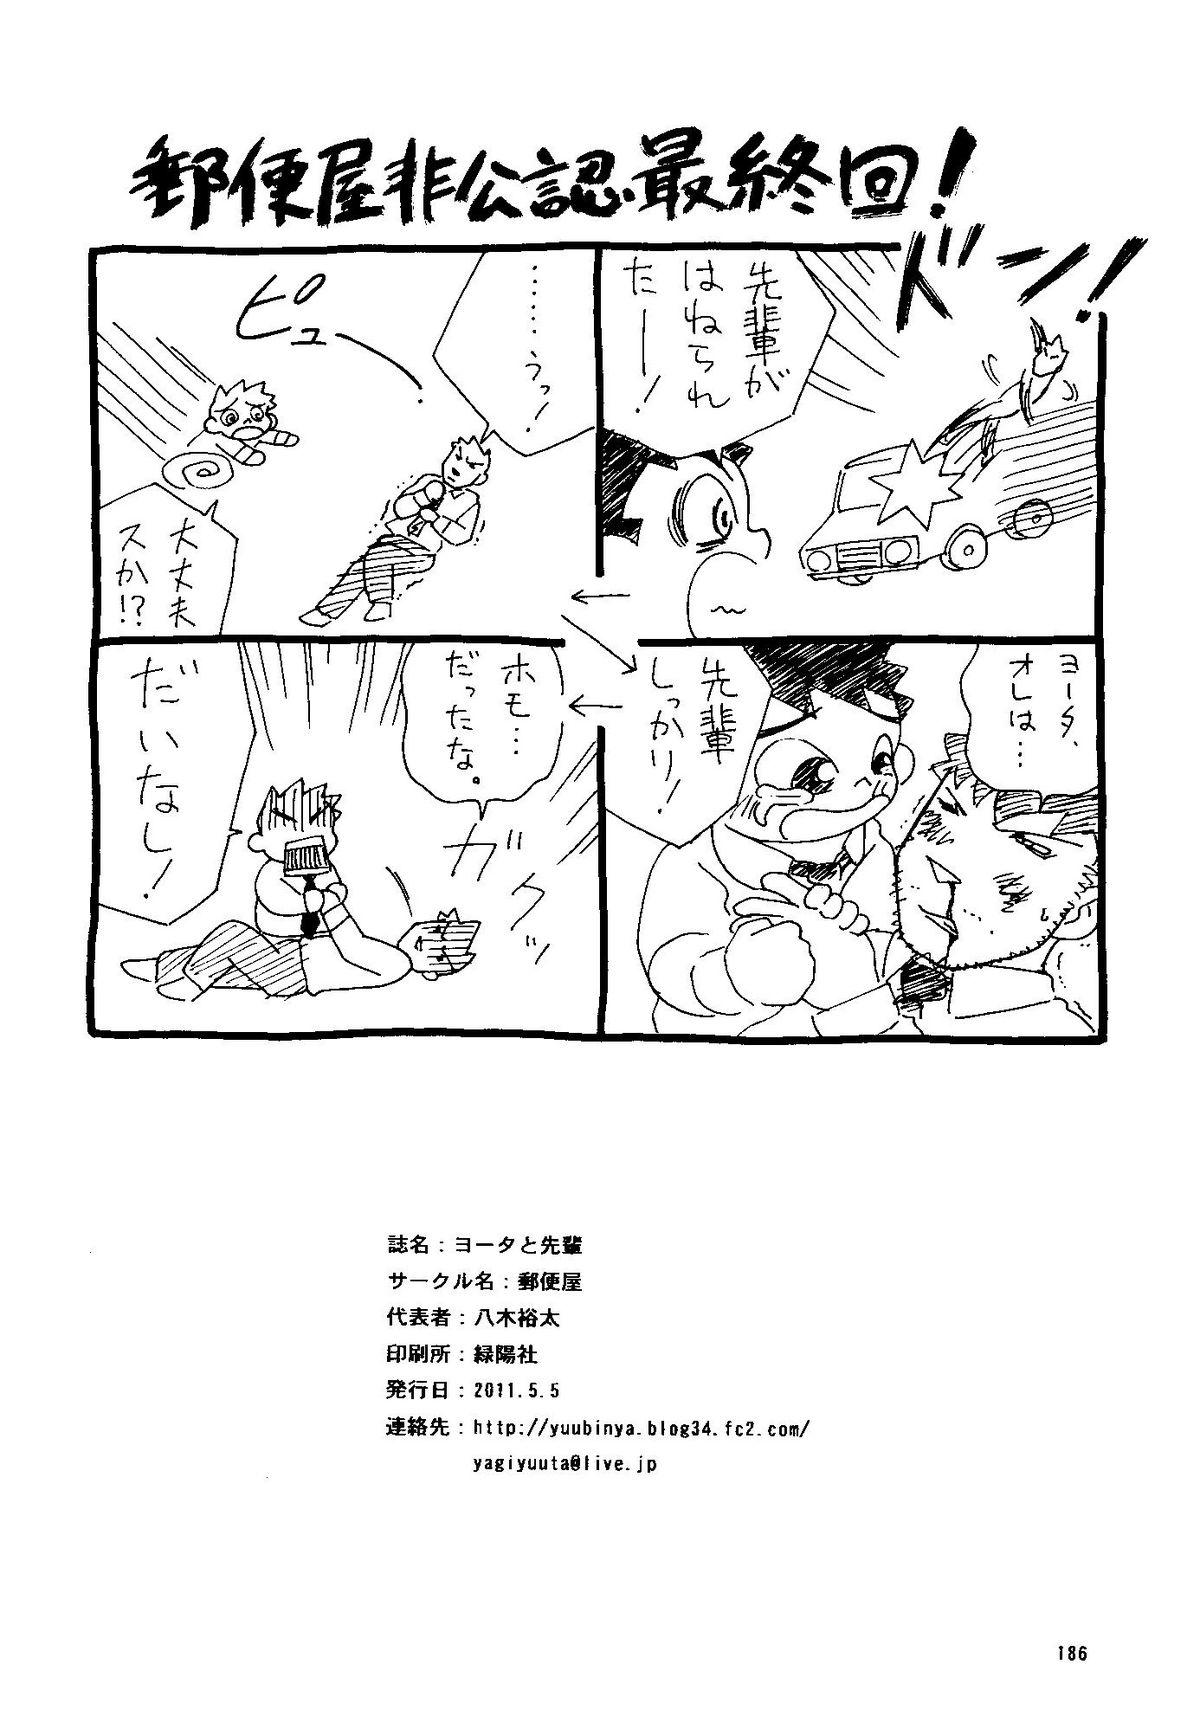 Bigcocks Futoshi Yagihiroshi (Yuubinya) - Youta to Sempai Exibicionismo - Page 186